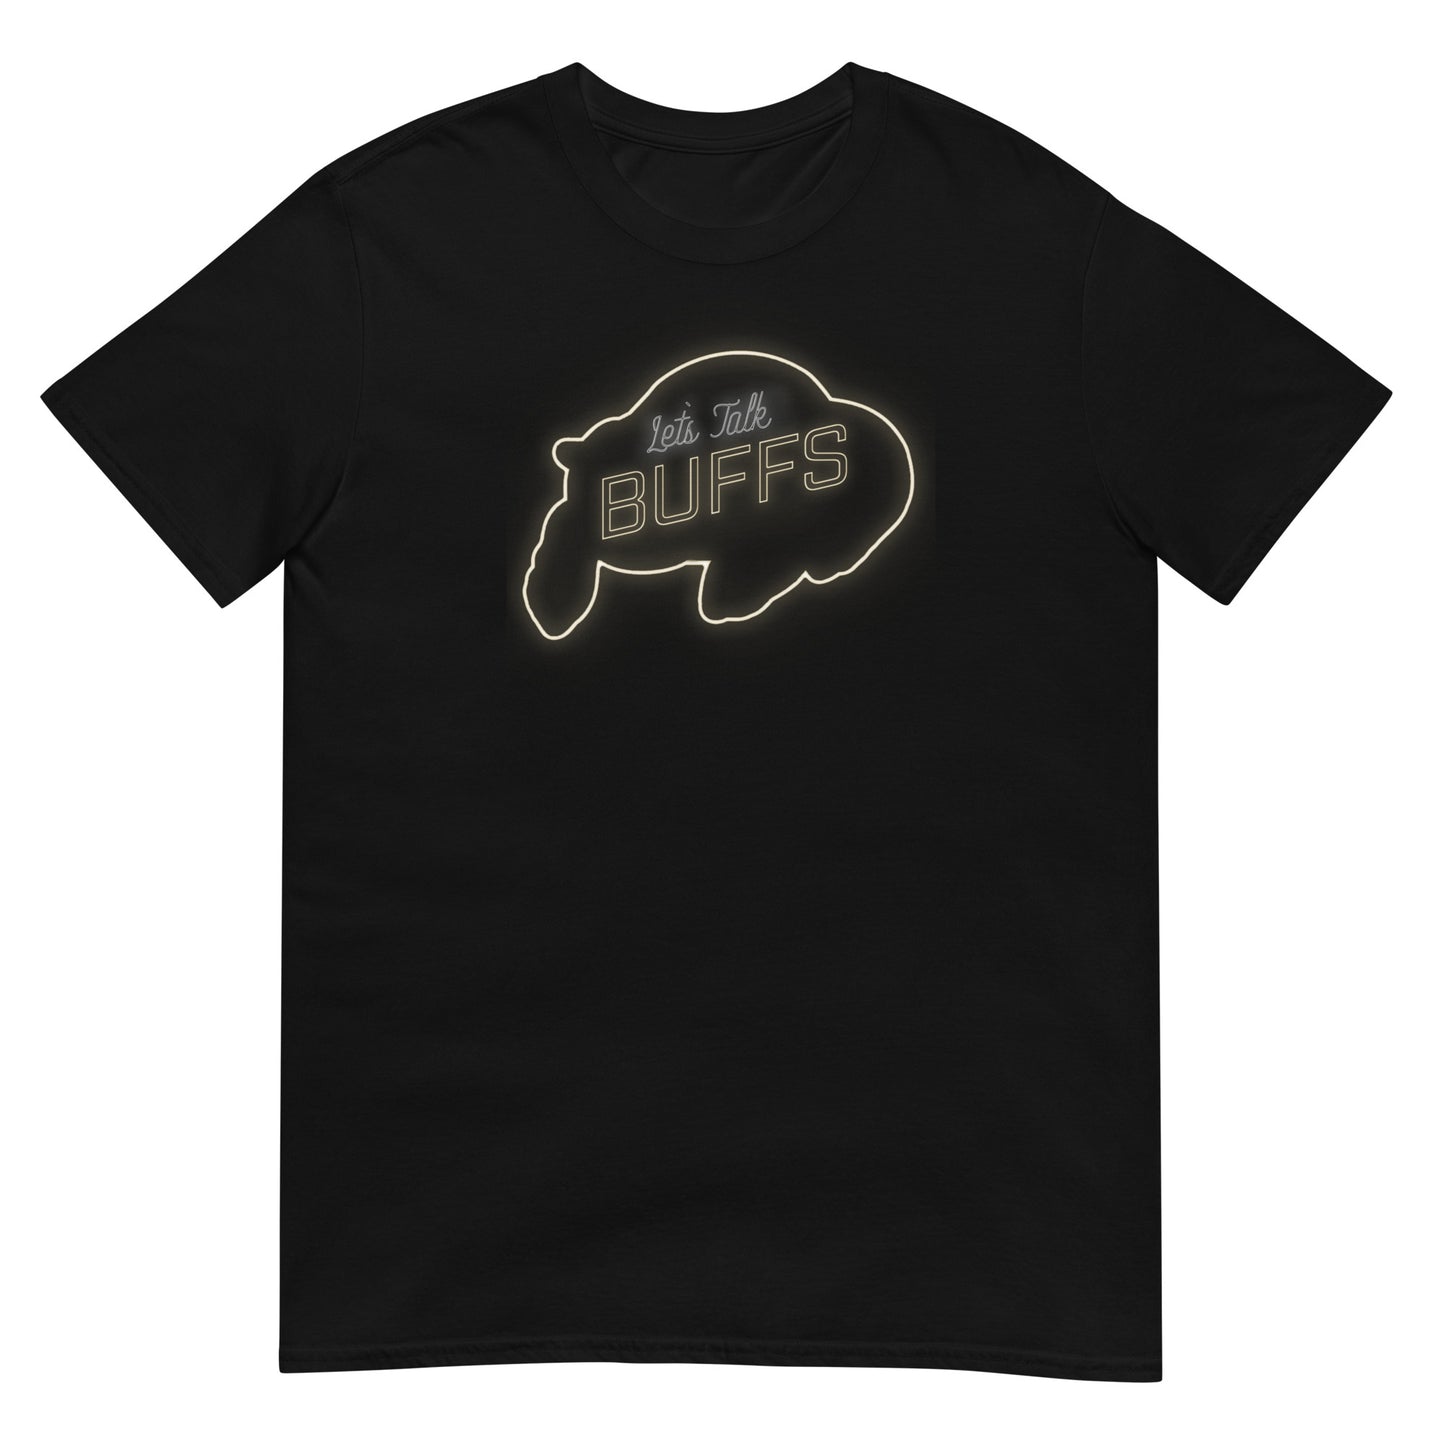 Let's Talk Buffs Shirt